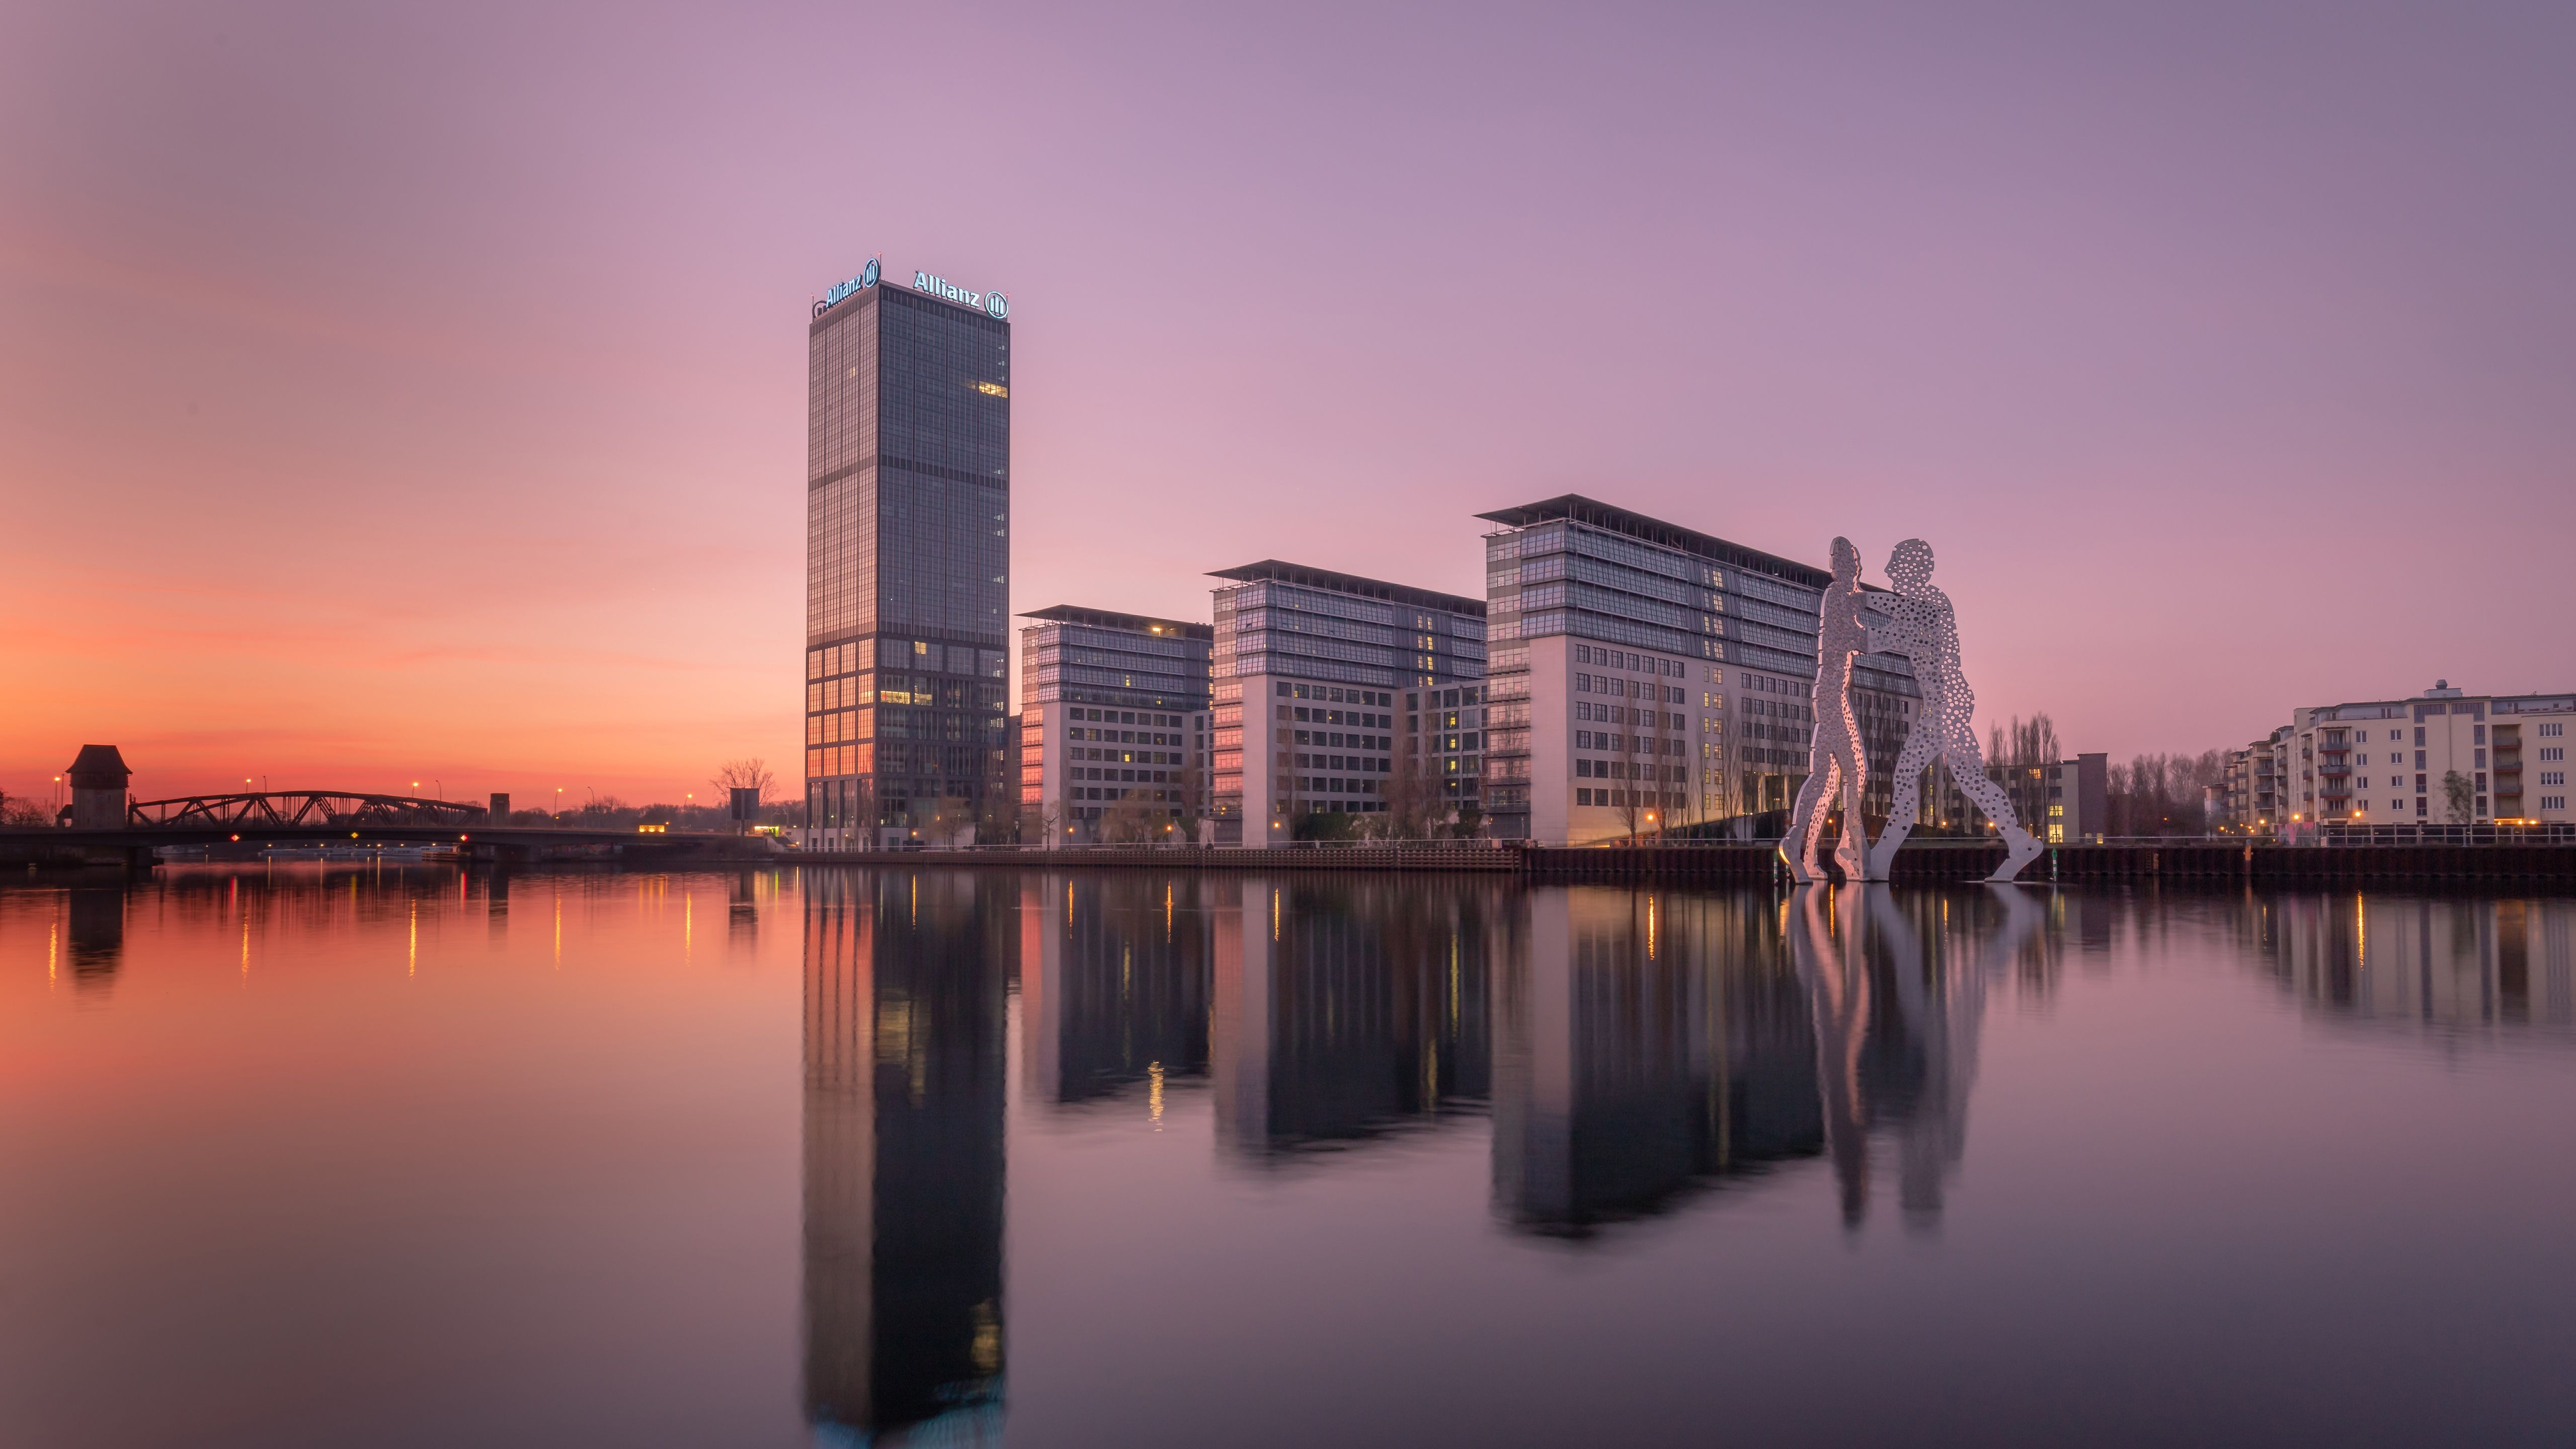 Berlin City Germany Reflection On Water 4K 5K HD Travel Wallpaper